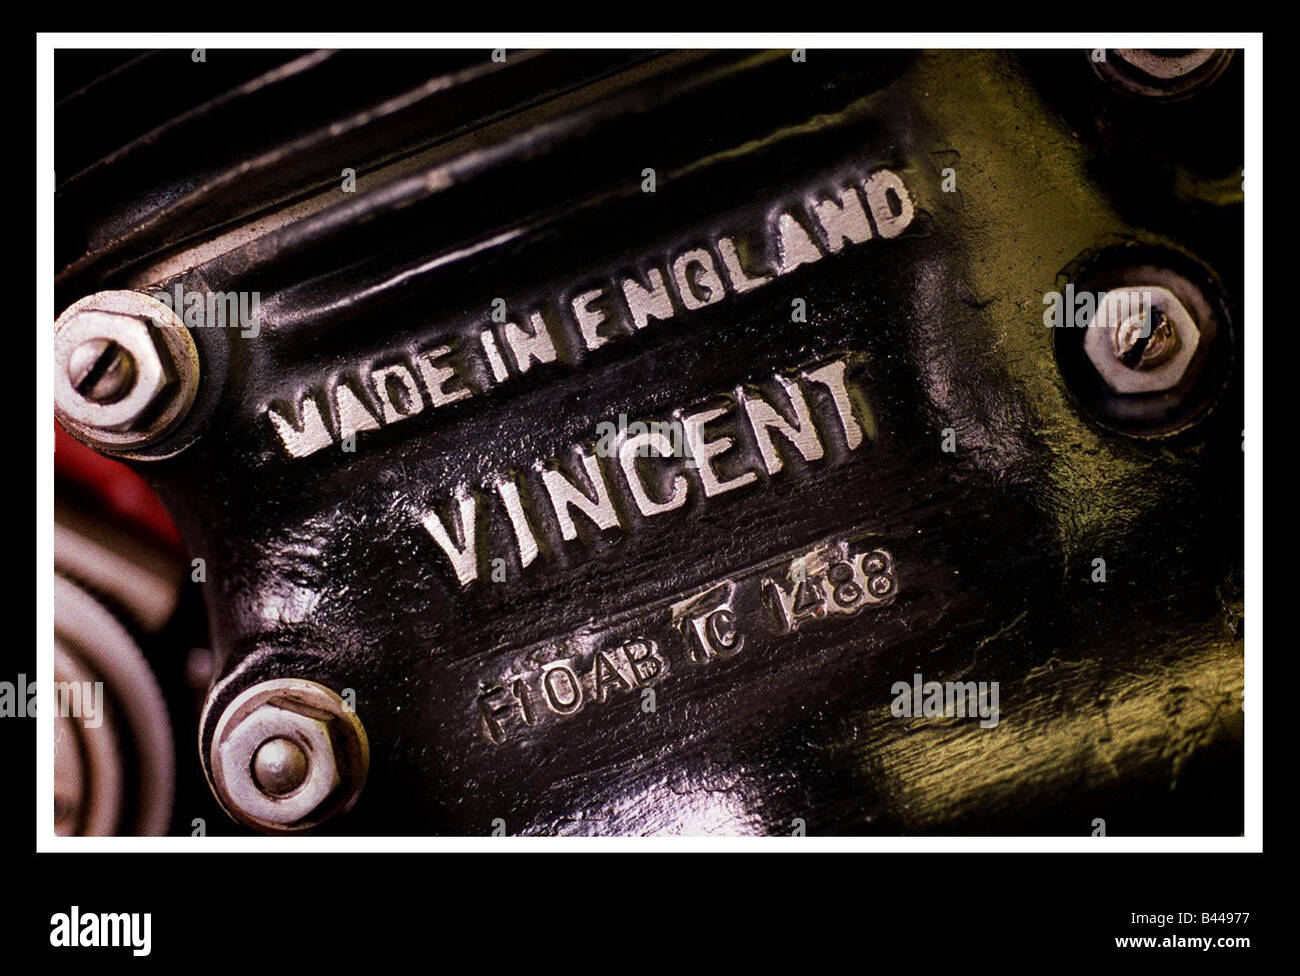 John Surtees motorcylce marzo 1999 che mostra la piastra di registrazione Vincent Foto Stock